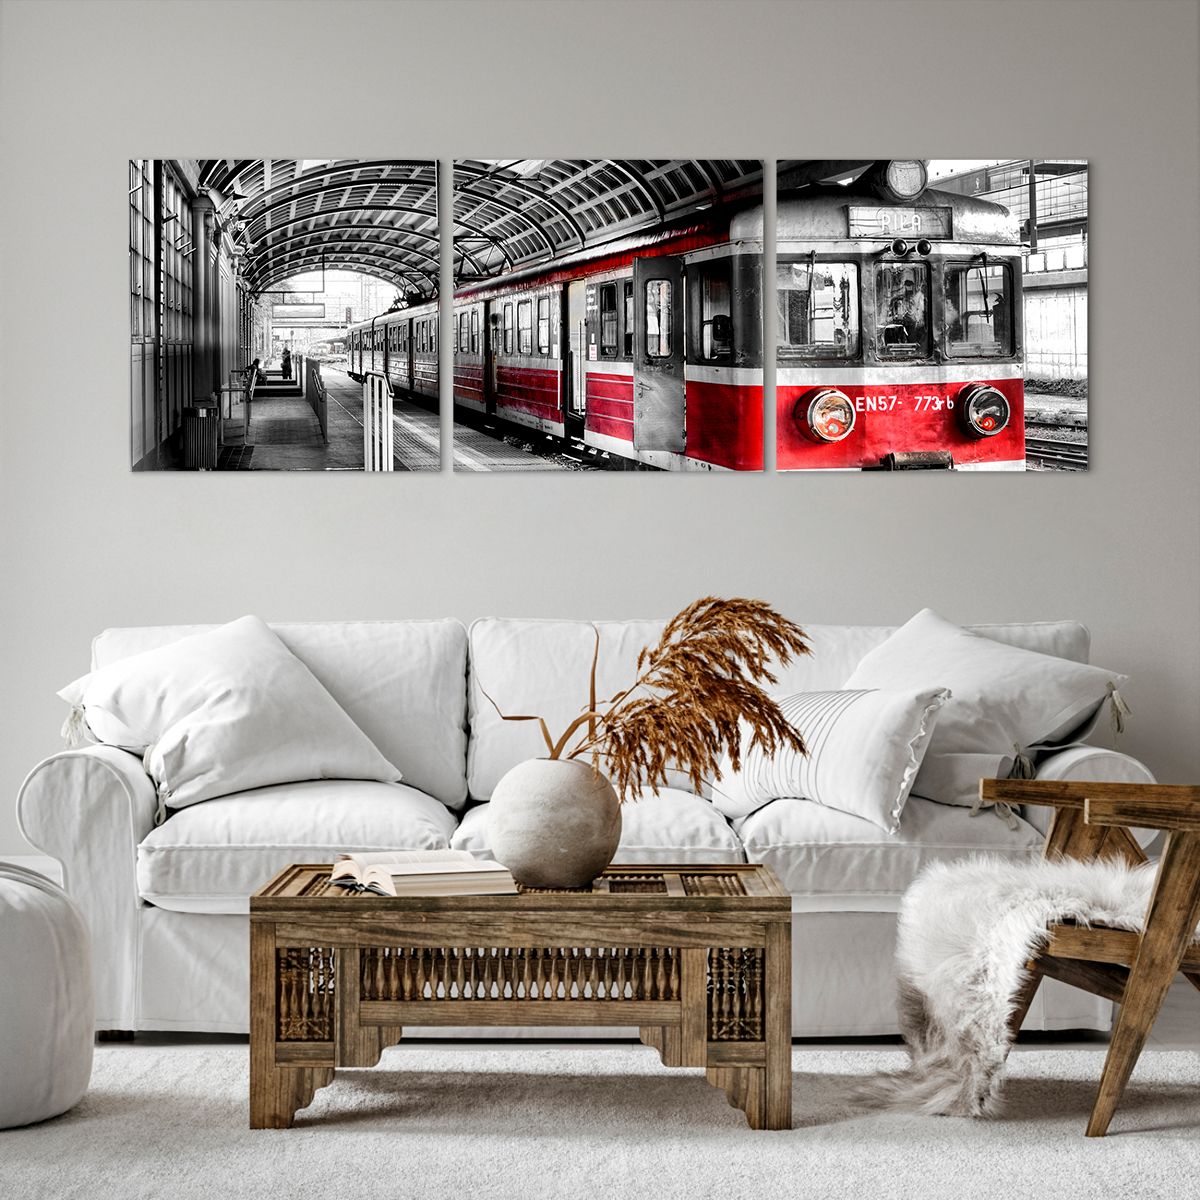 Bild auf Leinwand Personenzug, Bild auf Leinwand Bahnhof, Bild auf Leinwand Plattform, Bild auf Leinwand Lokomotive, Bild auf Leinwand Schwarz Und Weiß